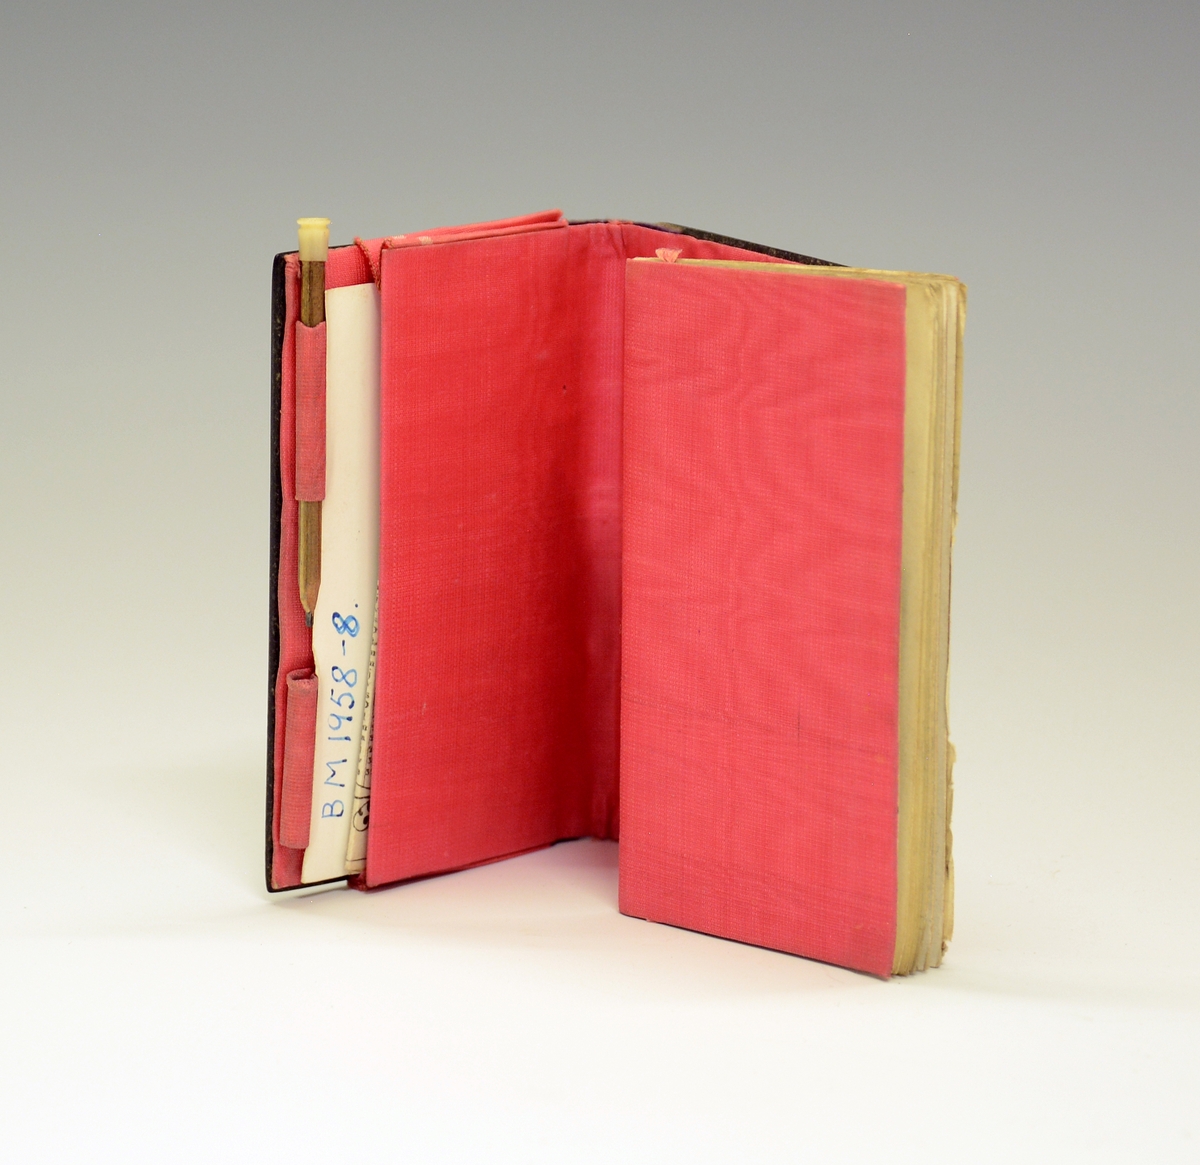 Notatbok med blyant og kalender for 1850. Fra protokollen: Dagbok, kjøpt i Frankrike 1850 av frk. Benedicte Plesner. Med stive, svarte permer med gullrand som er vekk på langsidene.